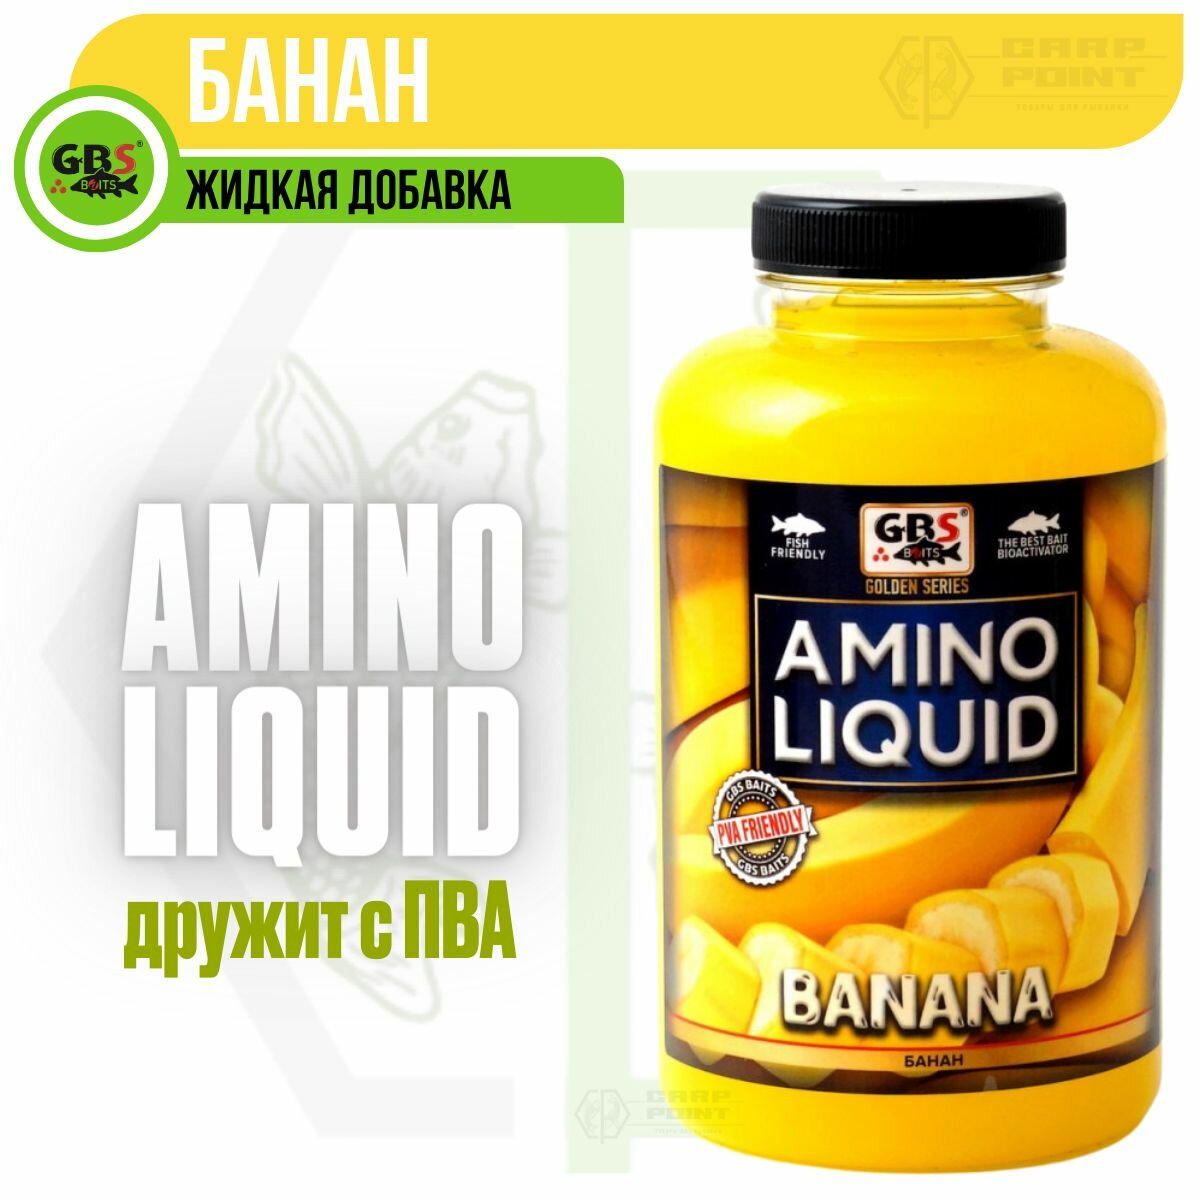 Амино ликвид GBS Amino Liquid BANANA Банан 0,5л (бутылка)